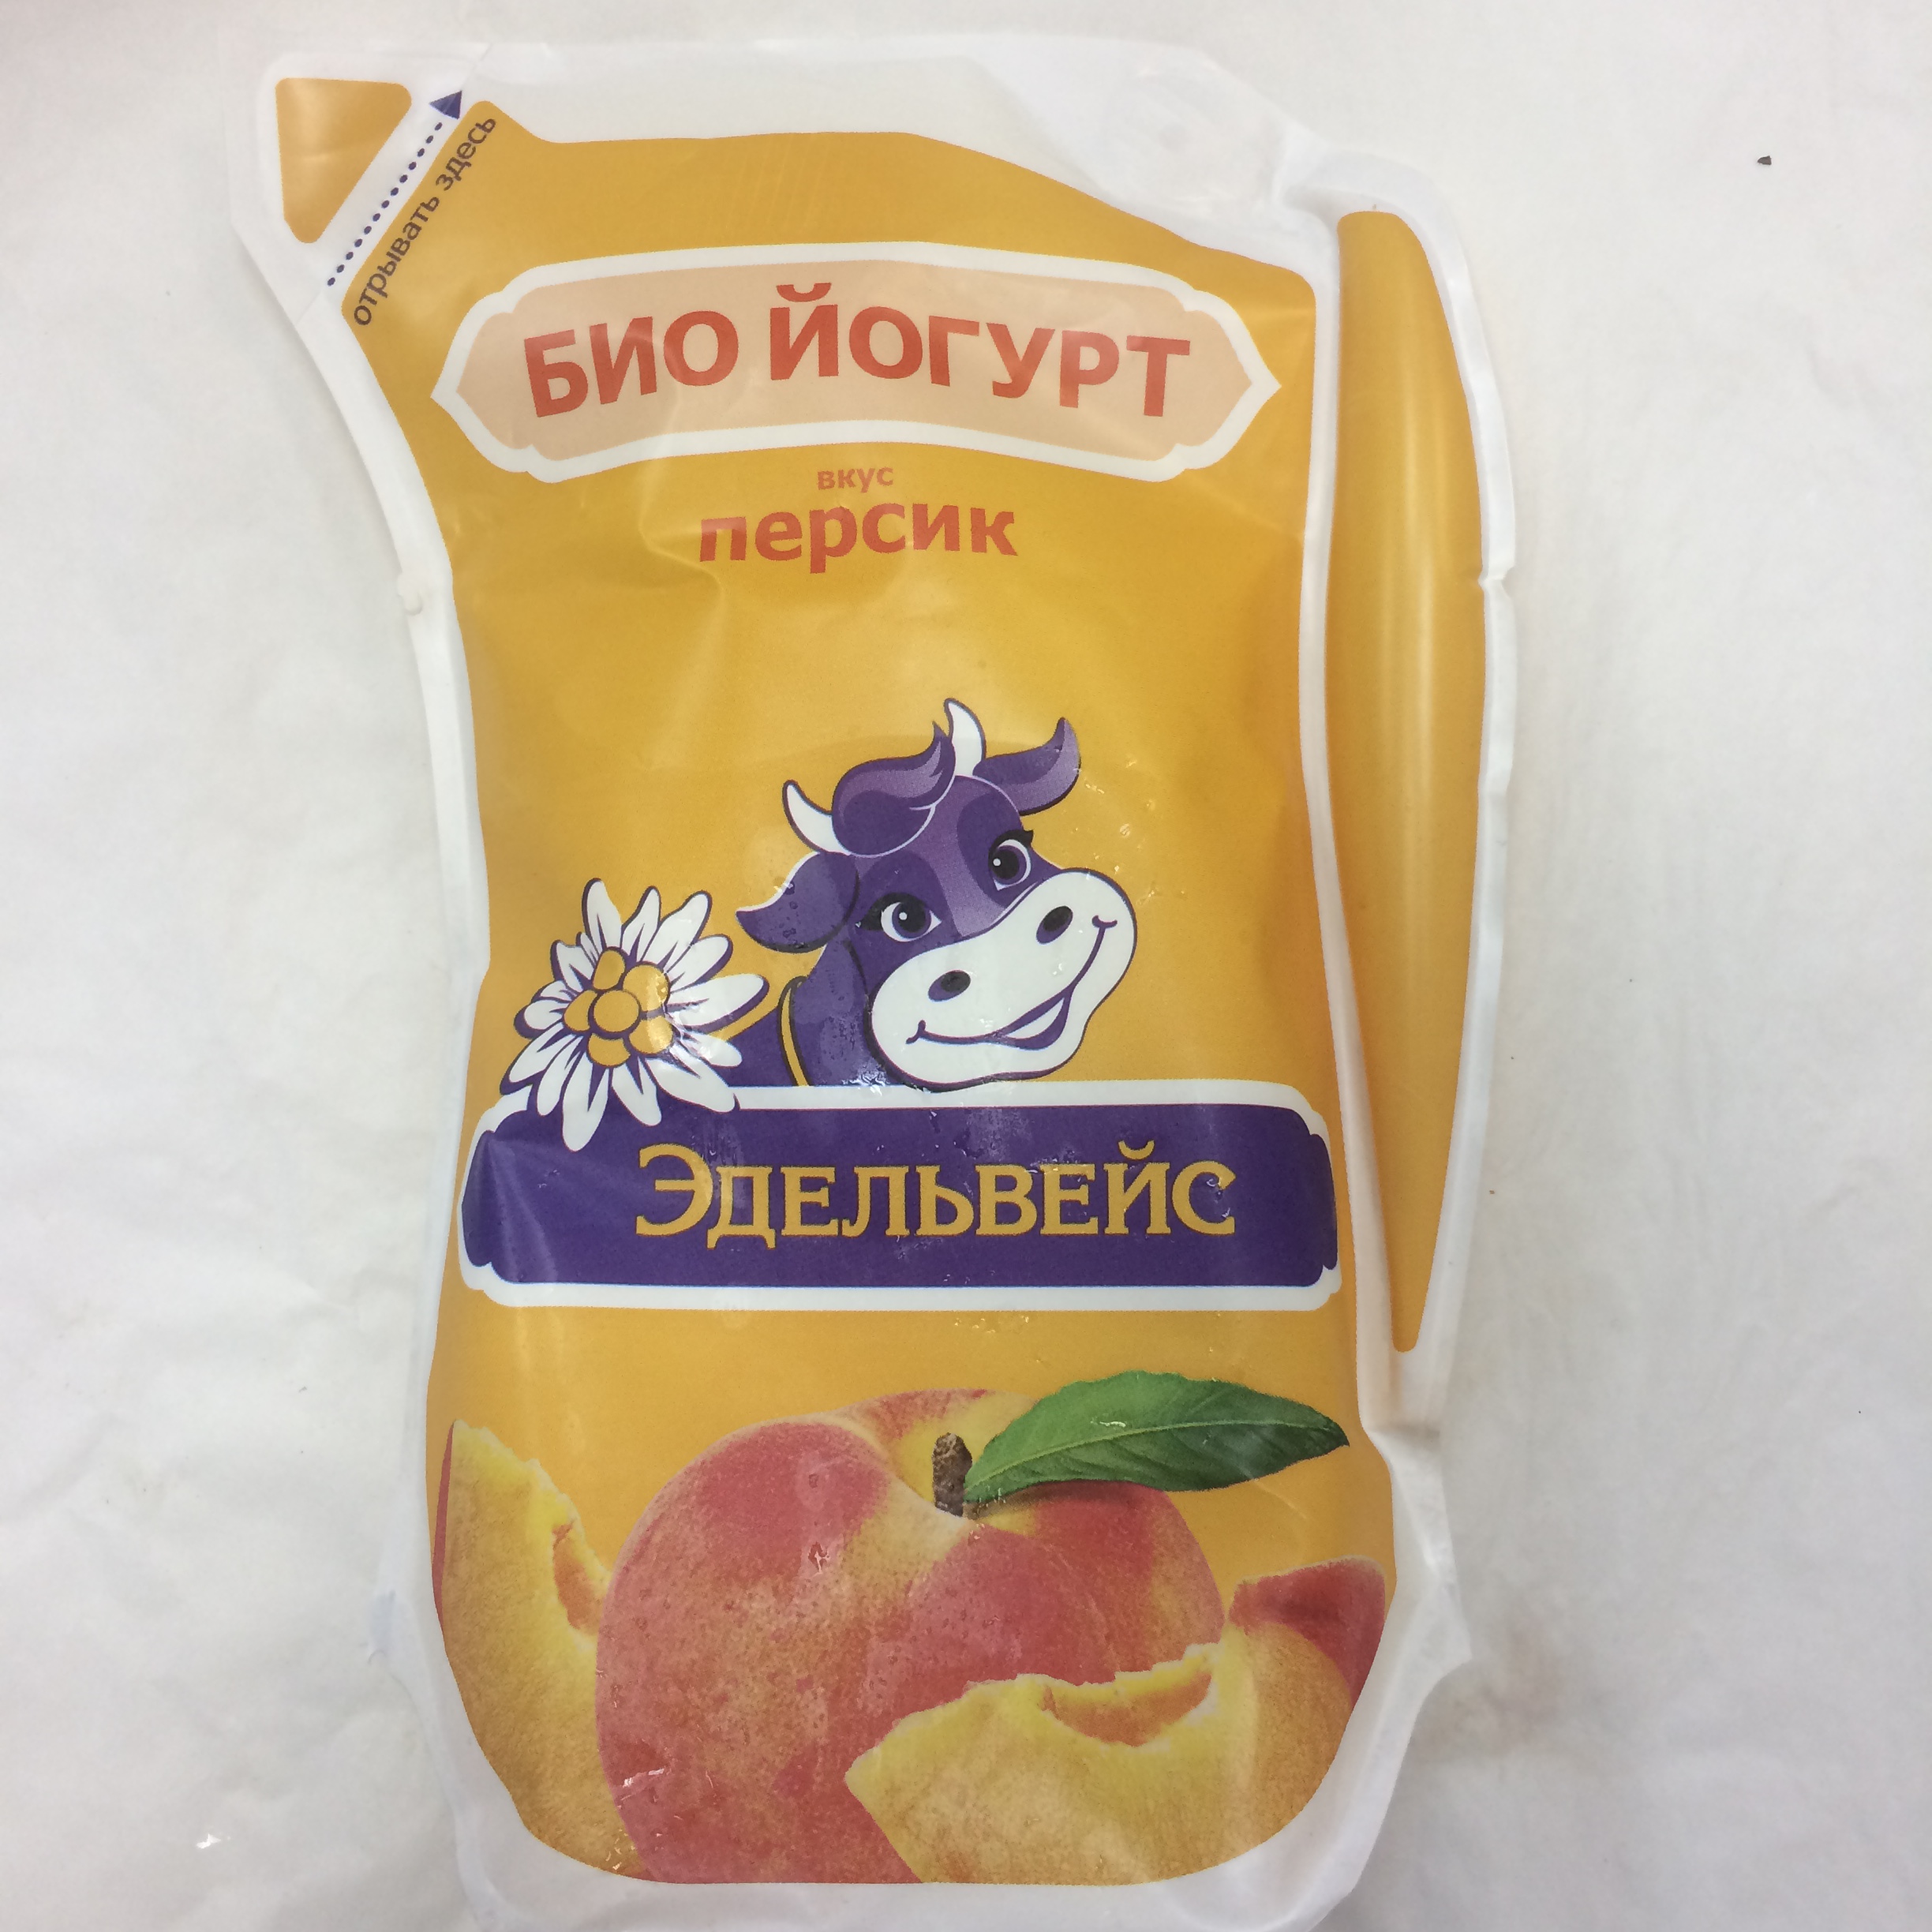 "БИО Йогурт" вкус "Персик" ТМ "Эдельвейс", 1%